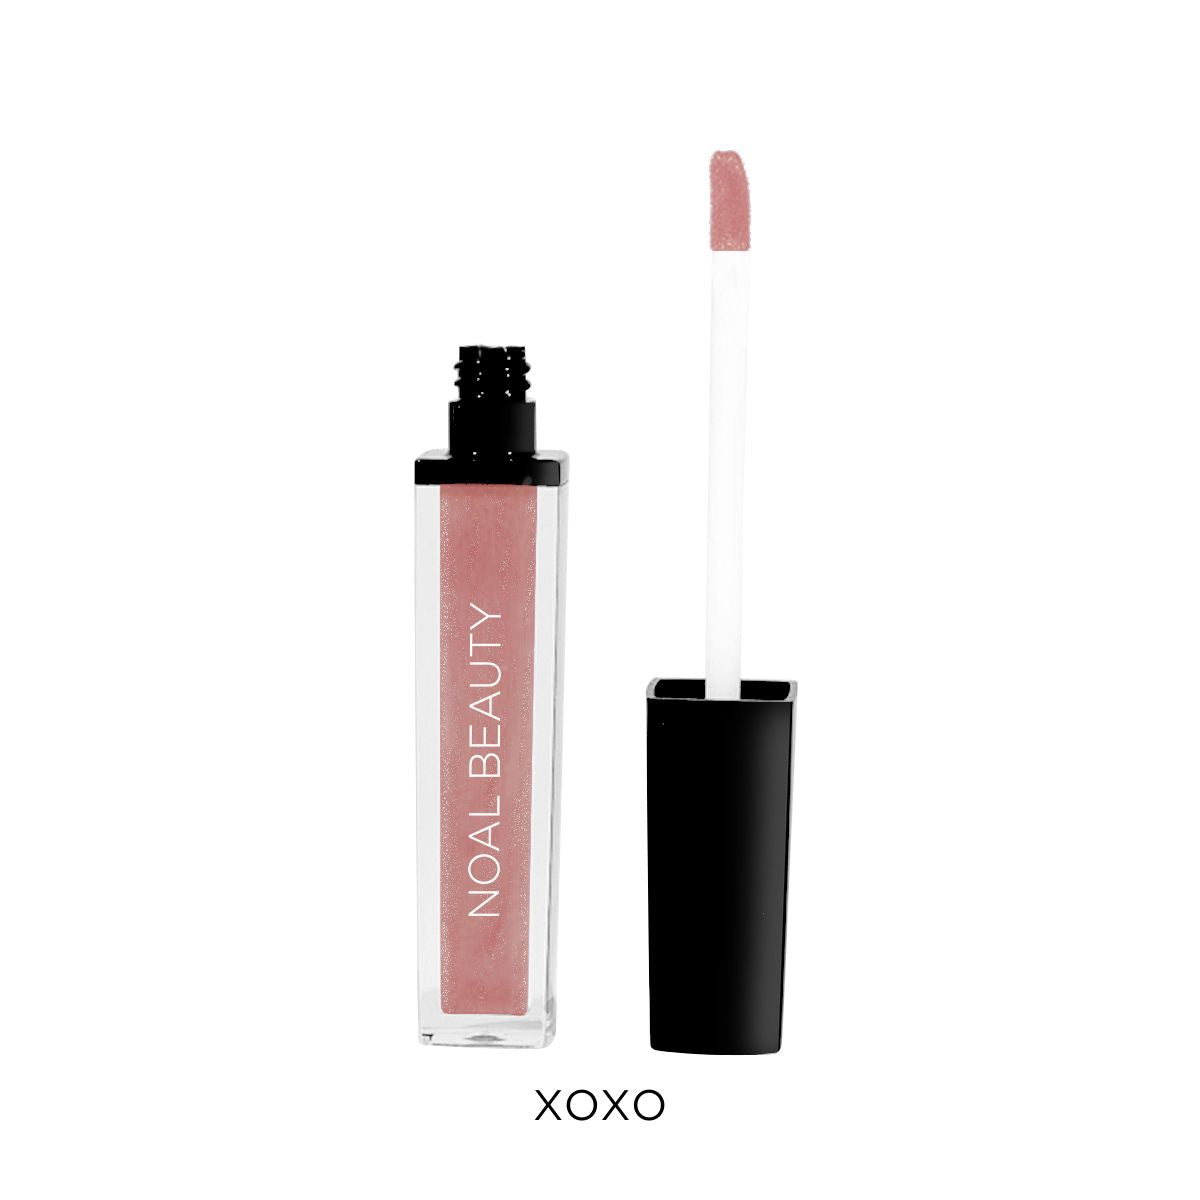 noal-beauty-XOXO-liquid-lip-gloss